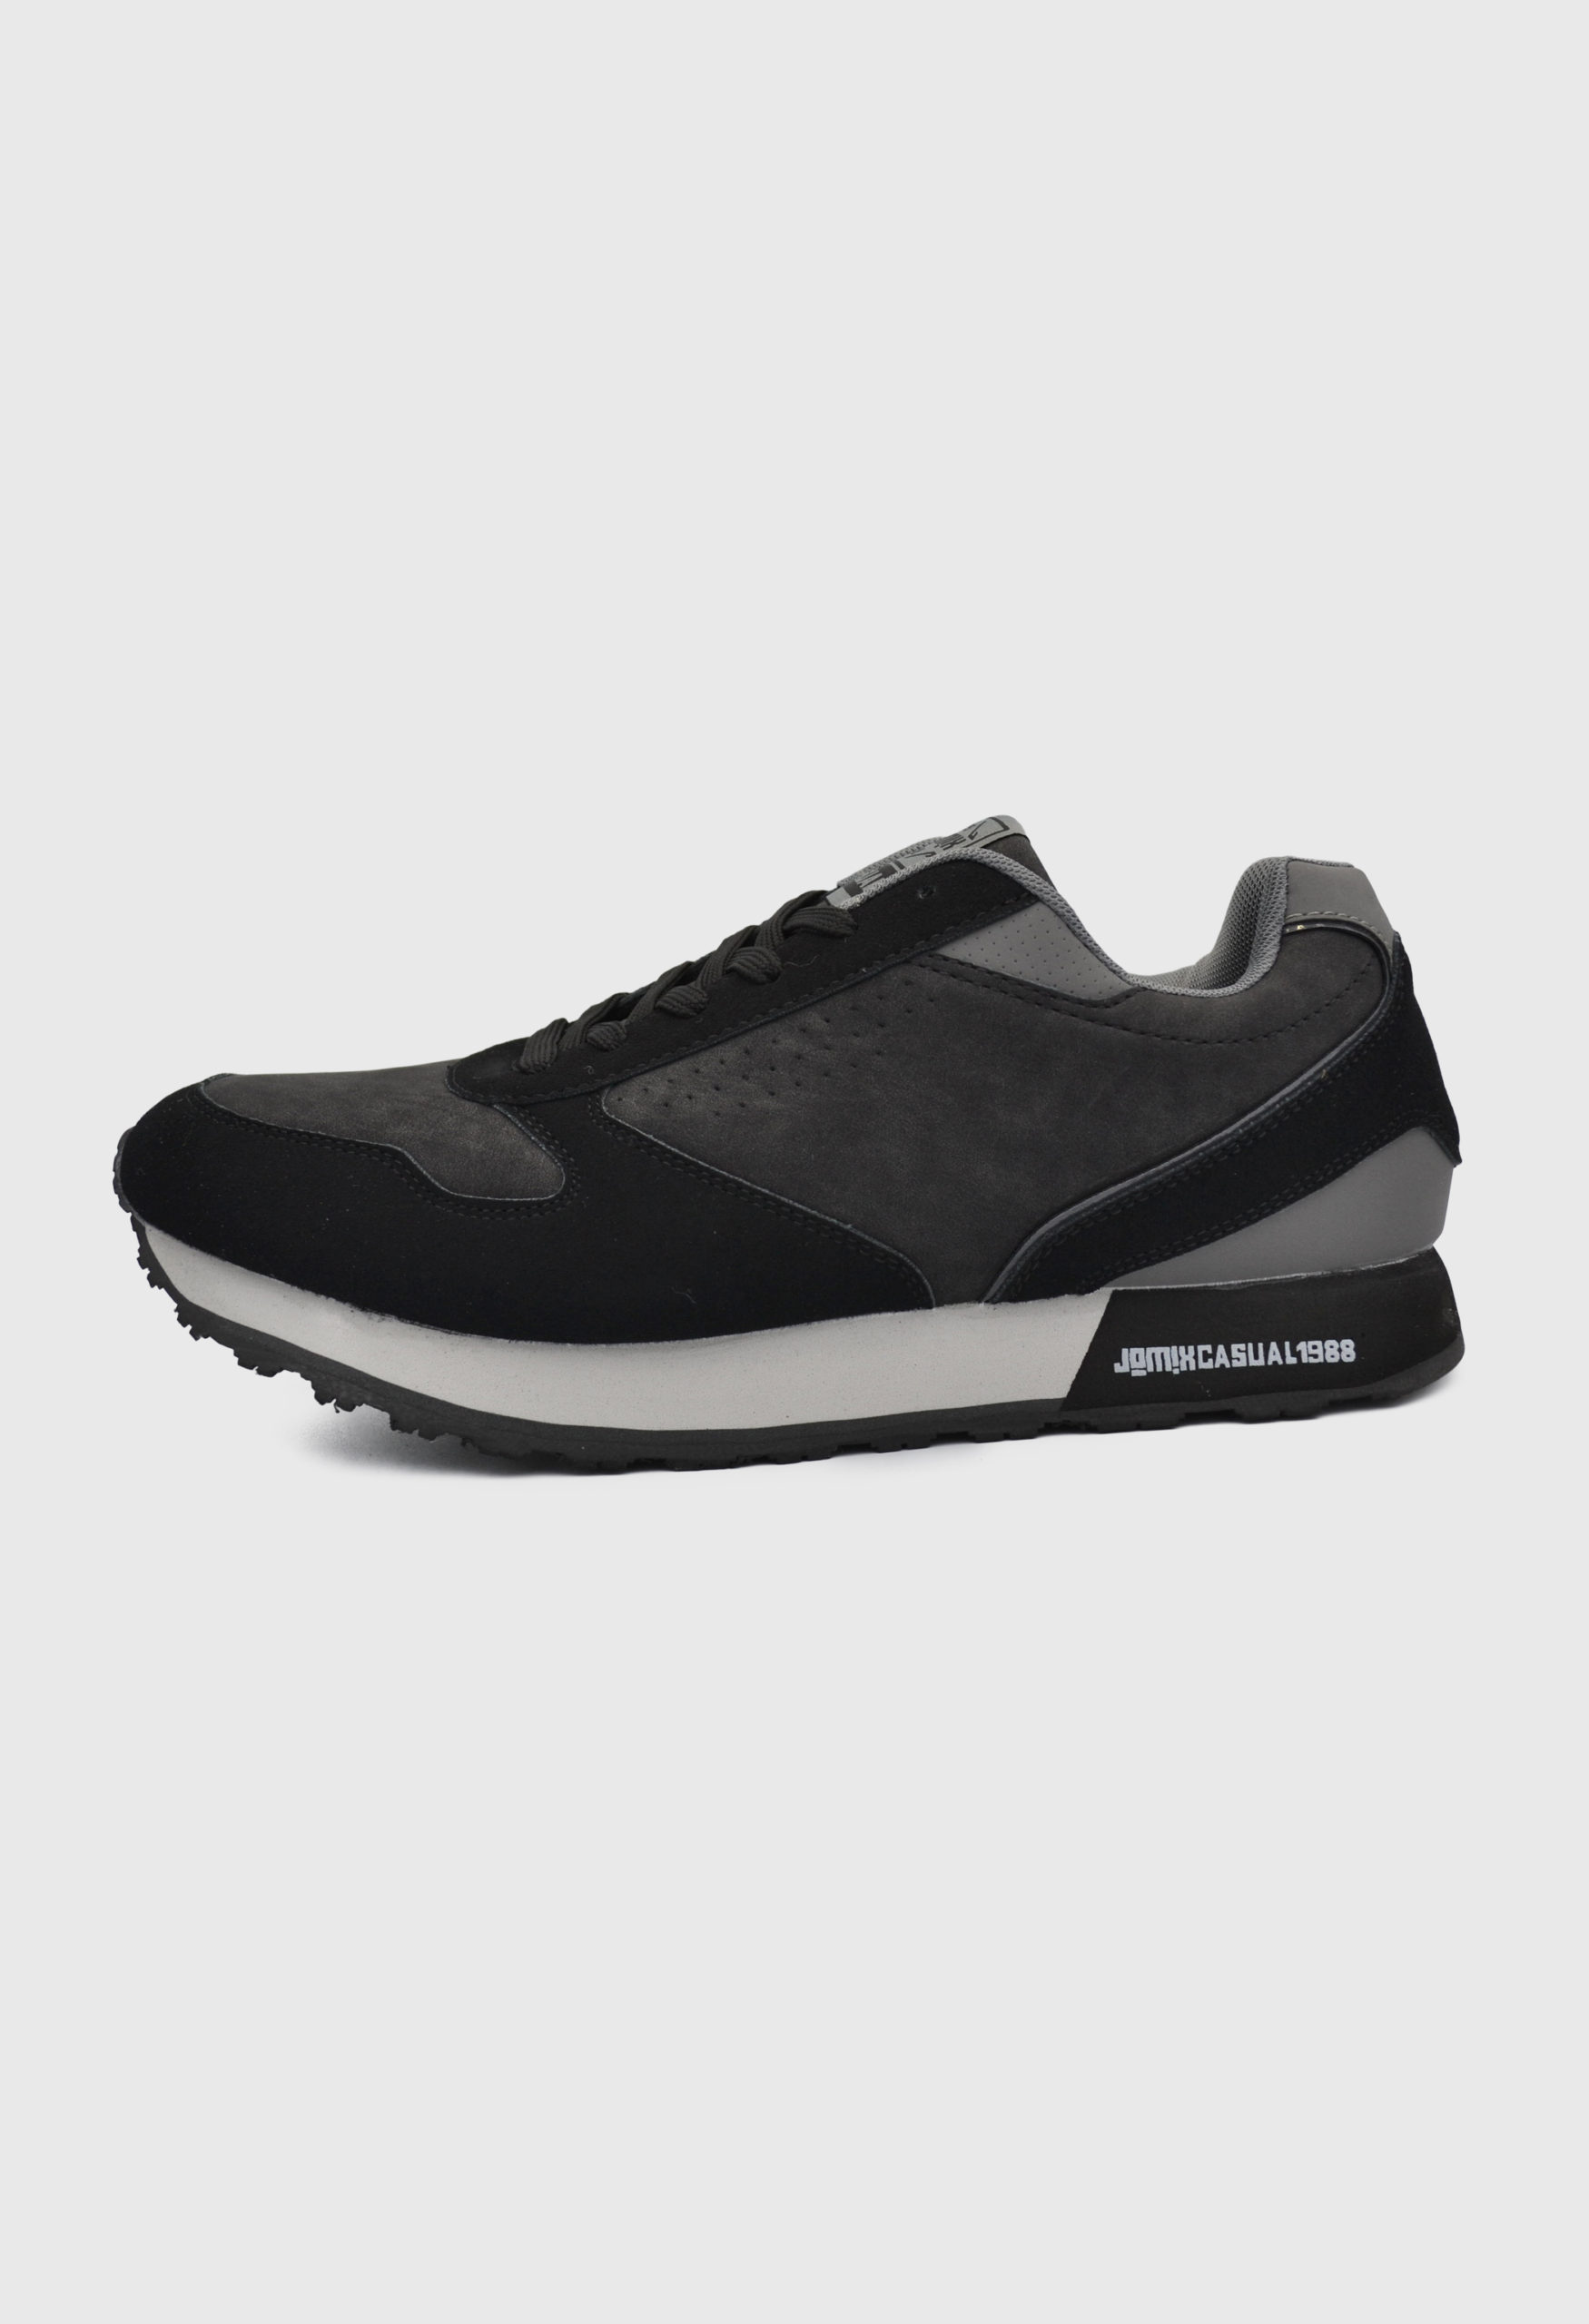 Ανδρικά Αθλητικά Παπούτσια για Τρέξιμο Μαύρο / 7698035 ΑΘΛΗΤΙΚΑ & SNEAKERS joya.gr